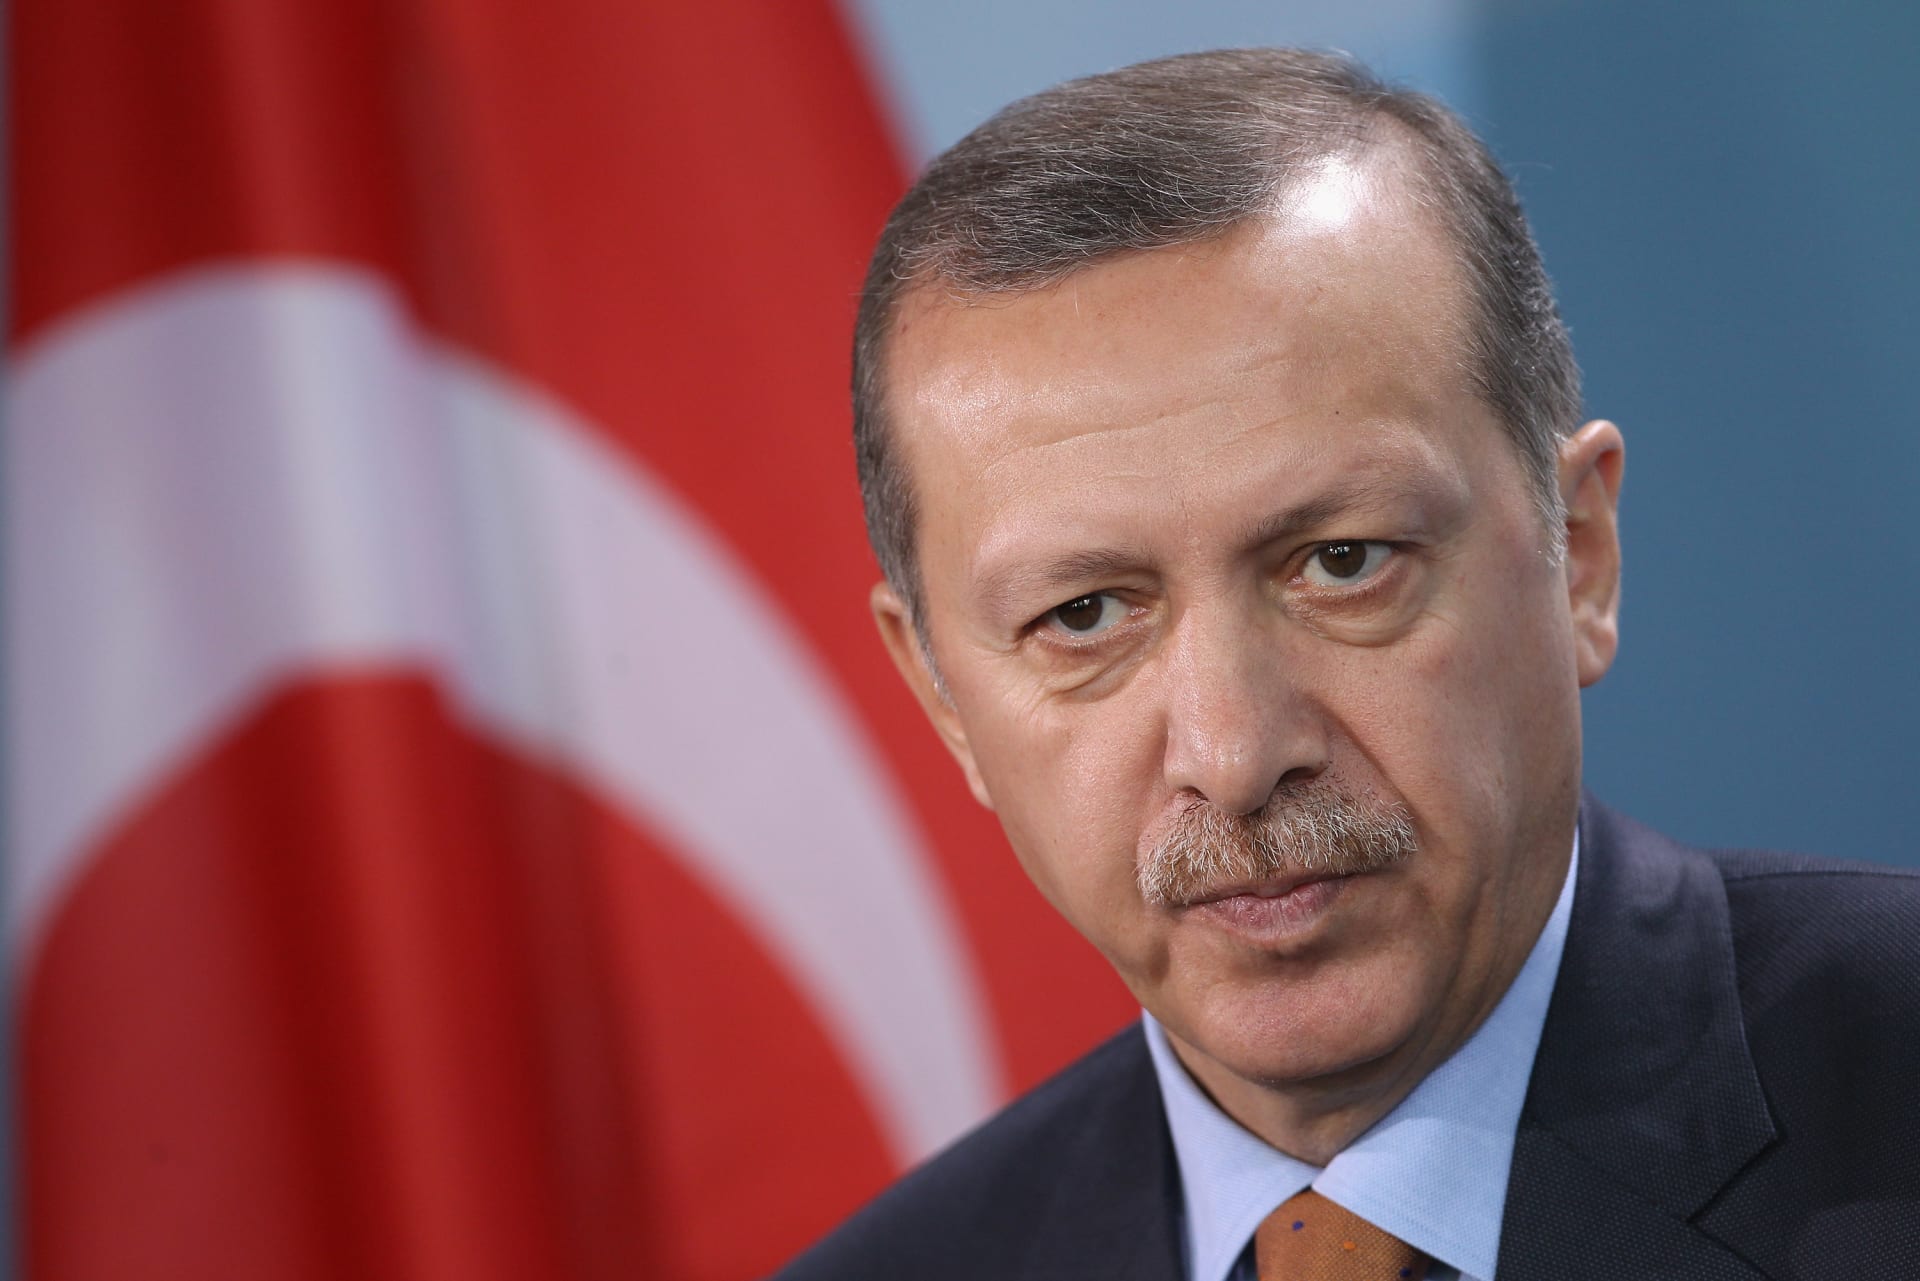 أردوغان: من ينشغل بإضرار أصدقائه ينهزم على يد أعدائه وسلام المنطقة مرتبط بالقضية الفلسطينية